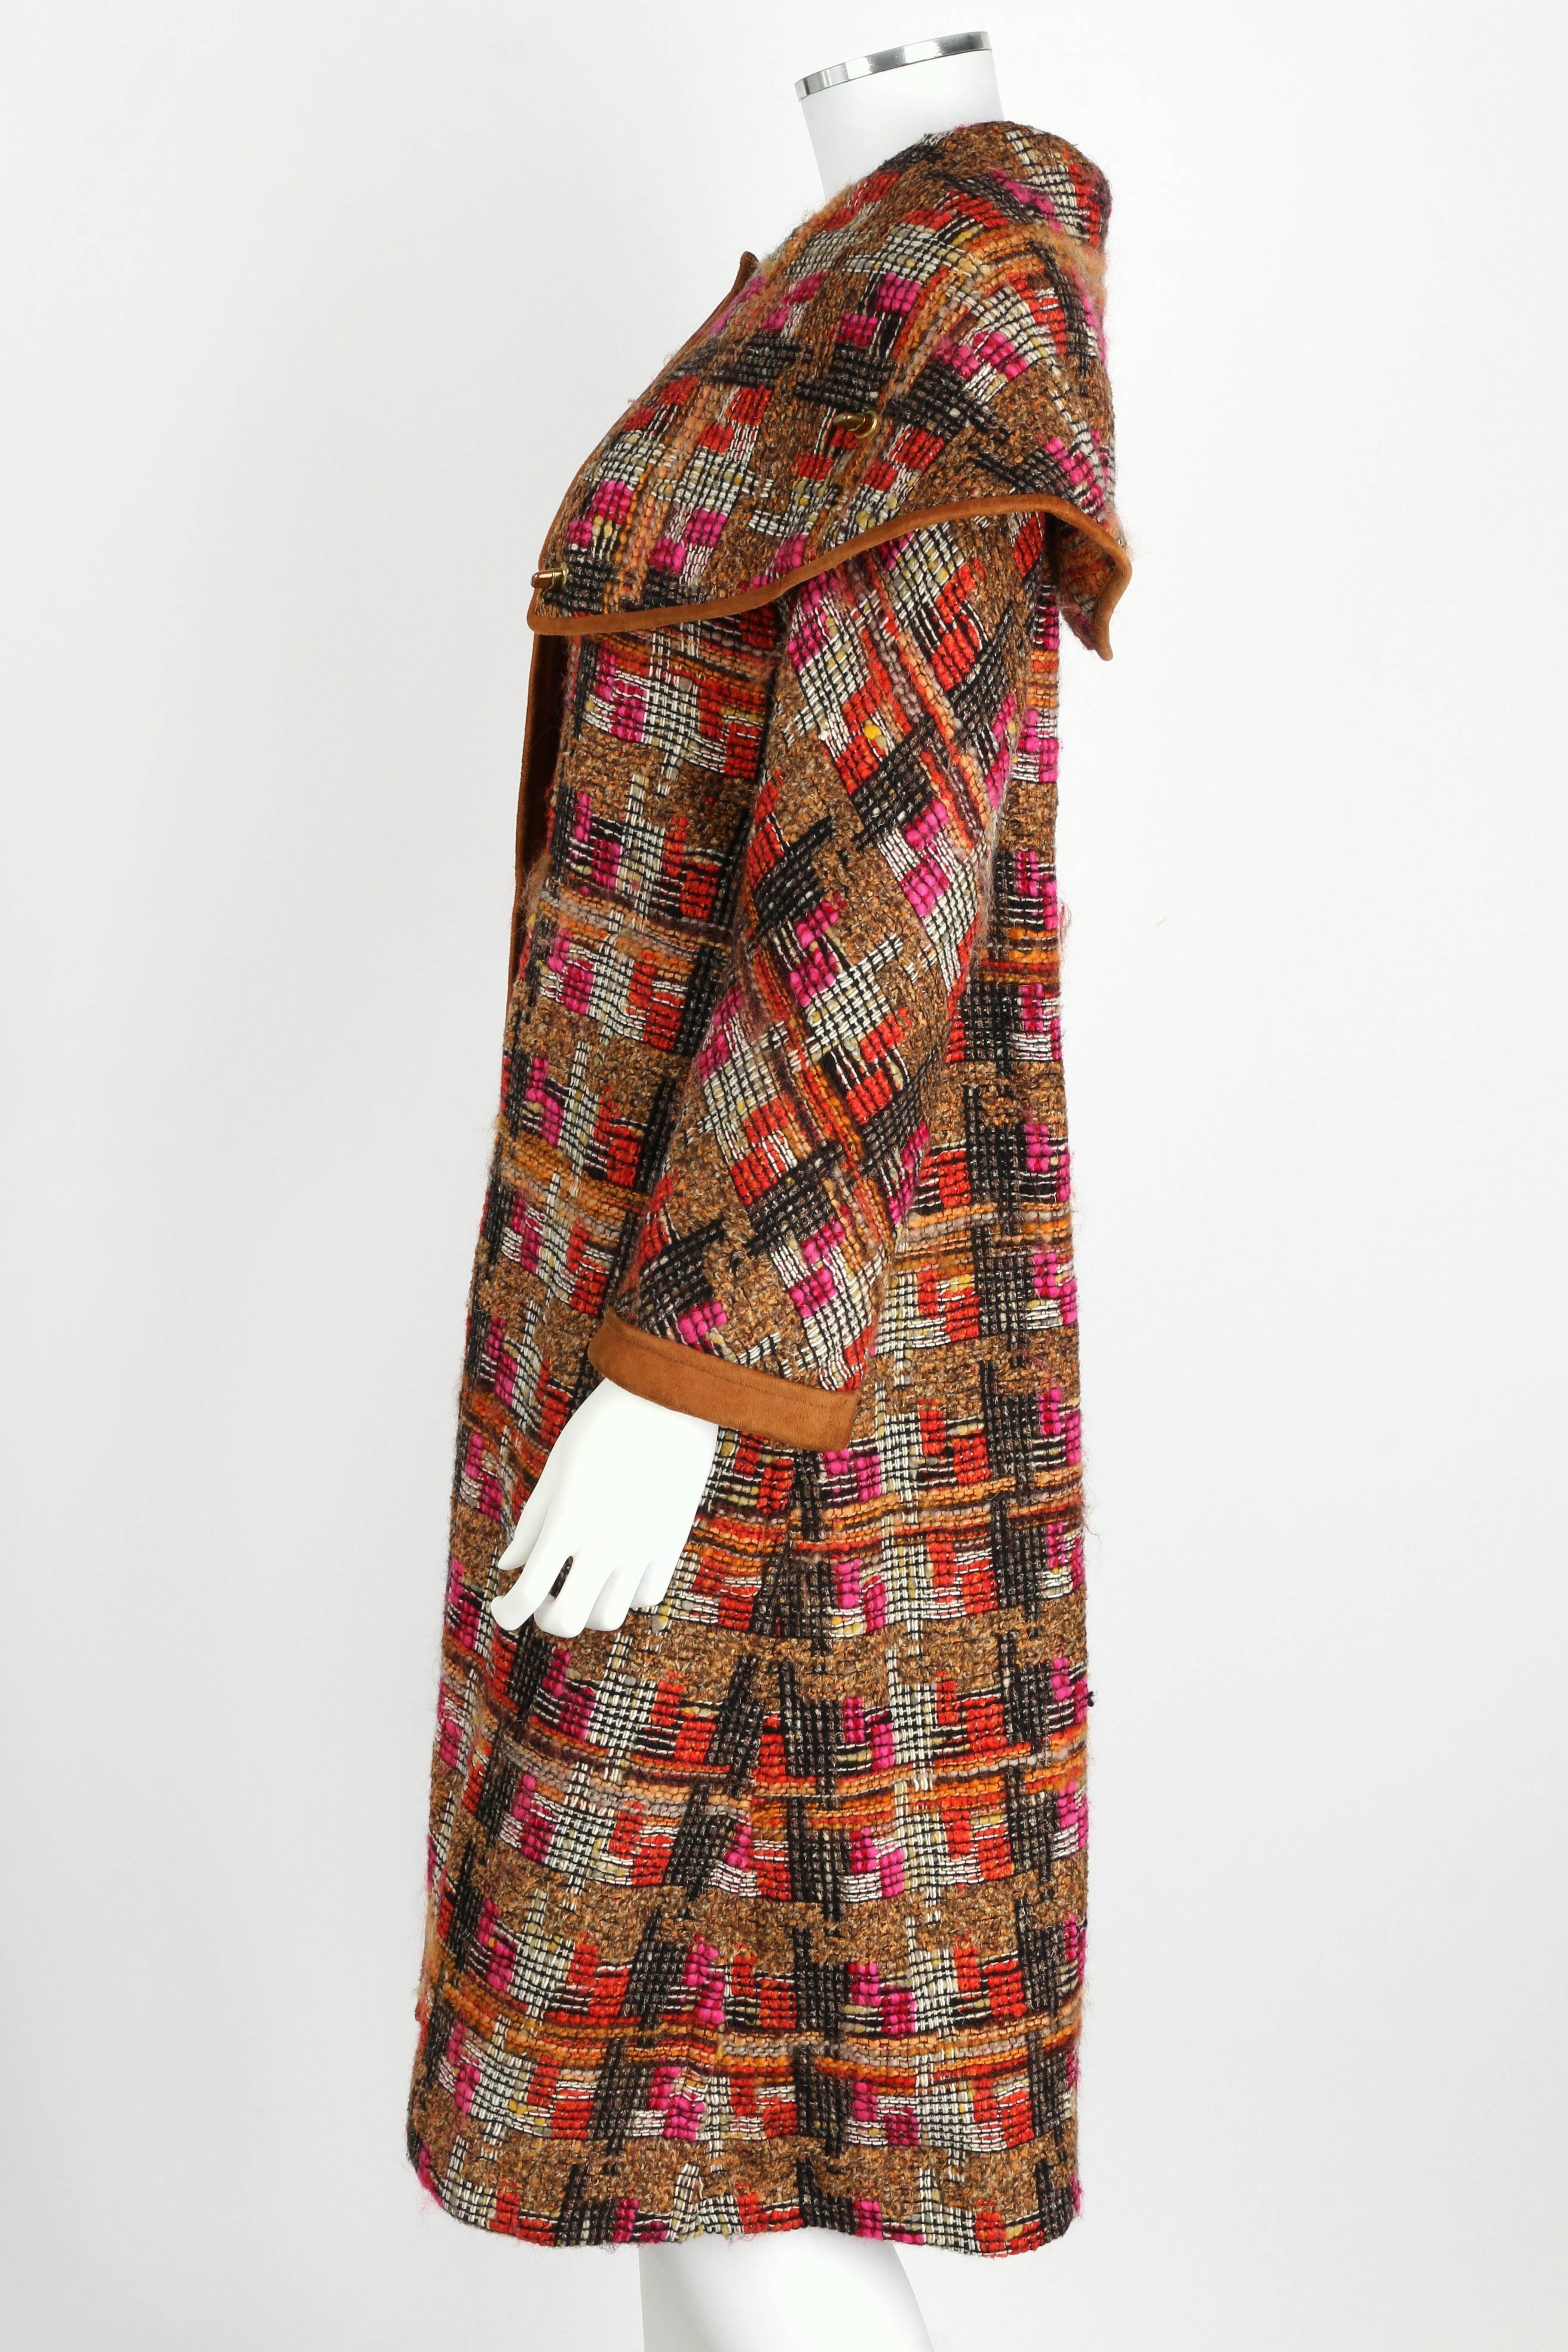 Women's BONNIE CASHIN 1960s SILLS Multi-color Tweed Suede Long Cape Coat Size XS / S